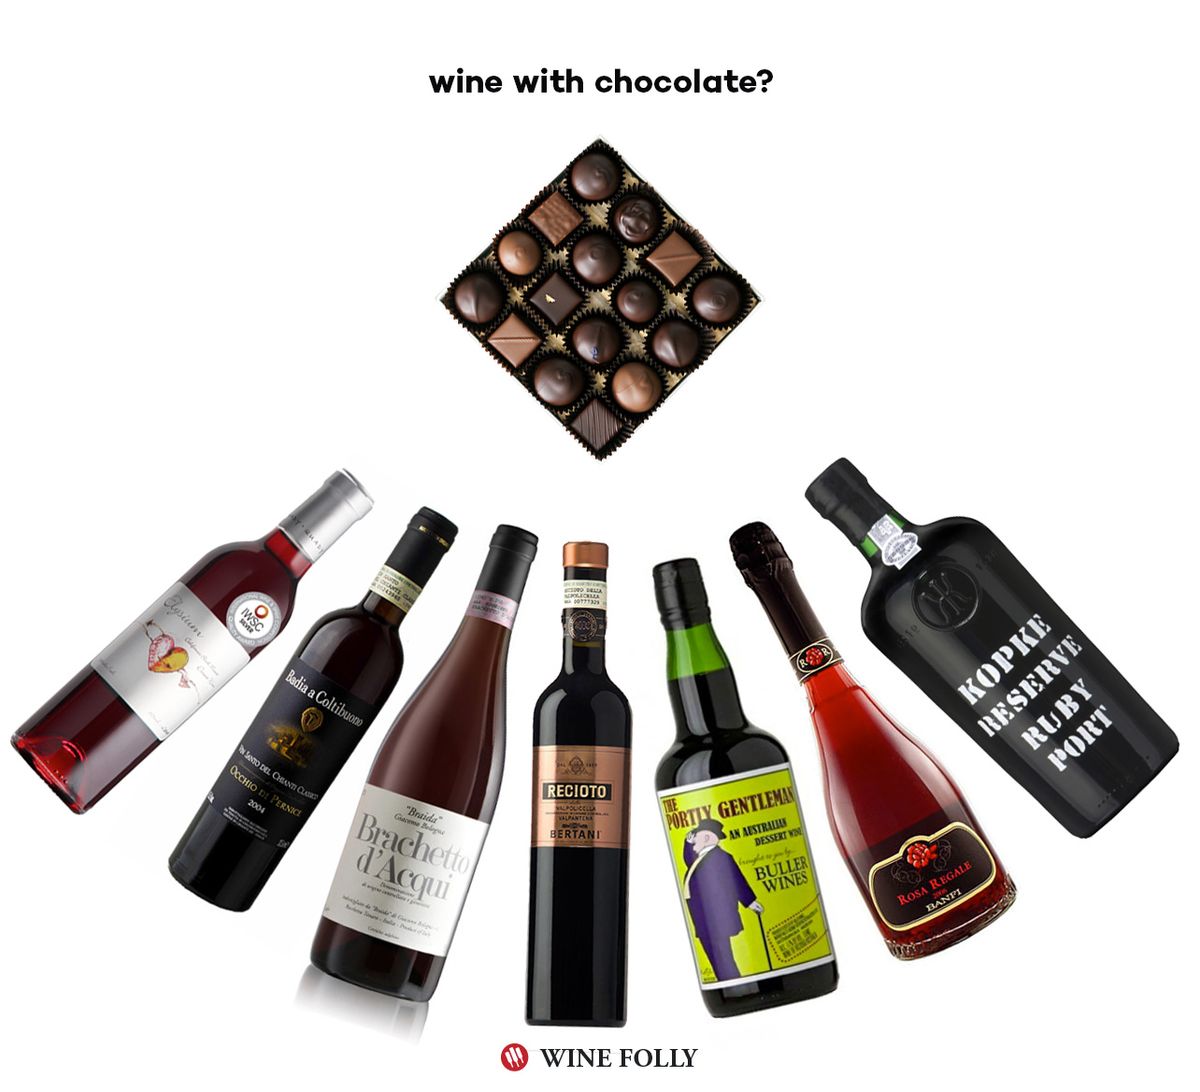 vino-con-chocolate-recomendaciones-vino-locura